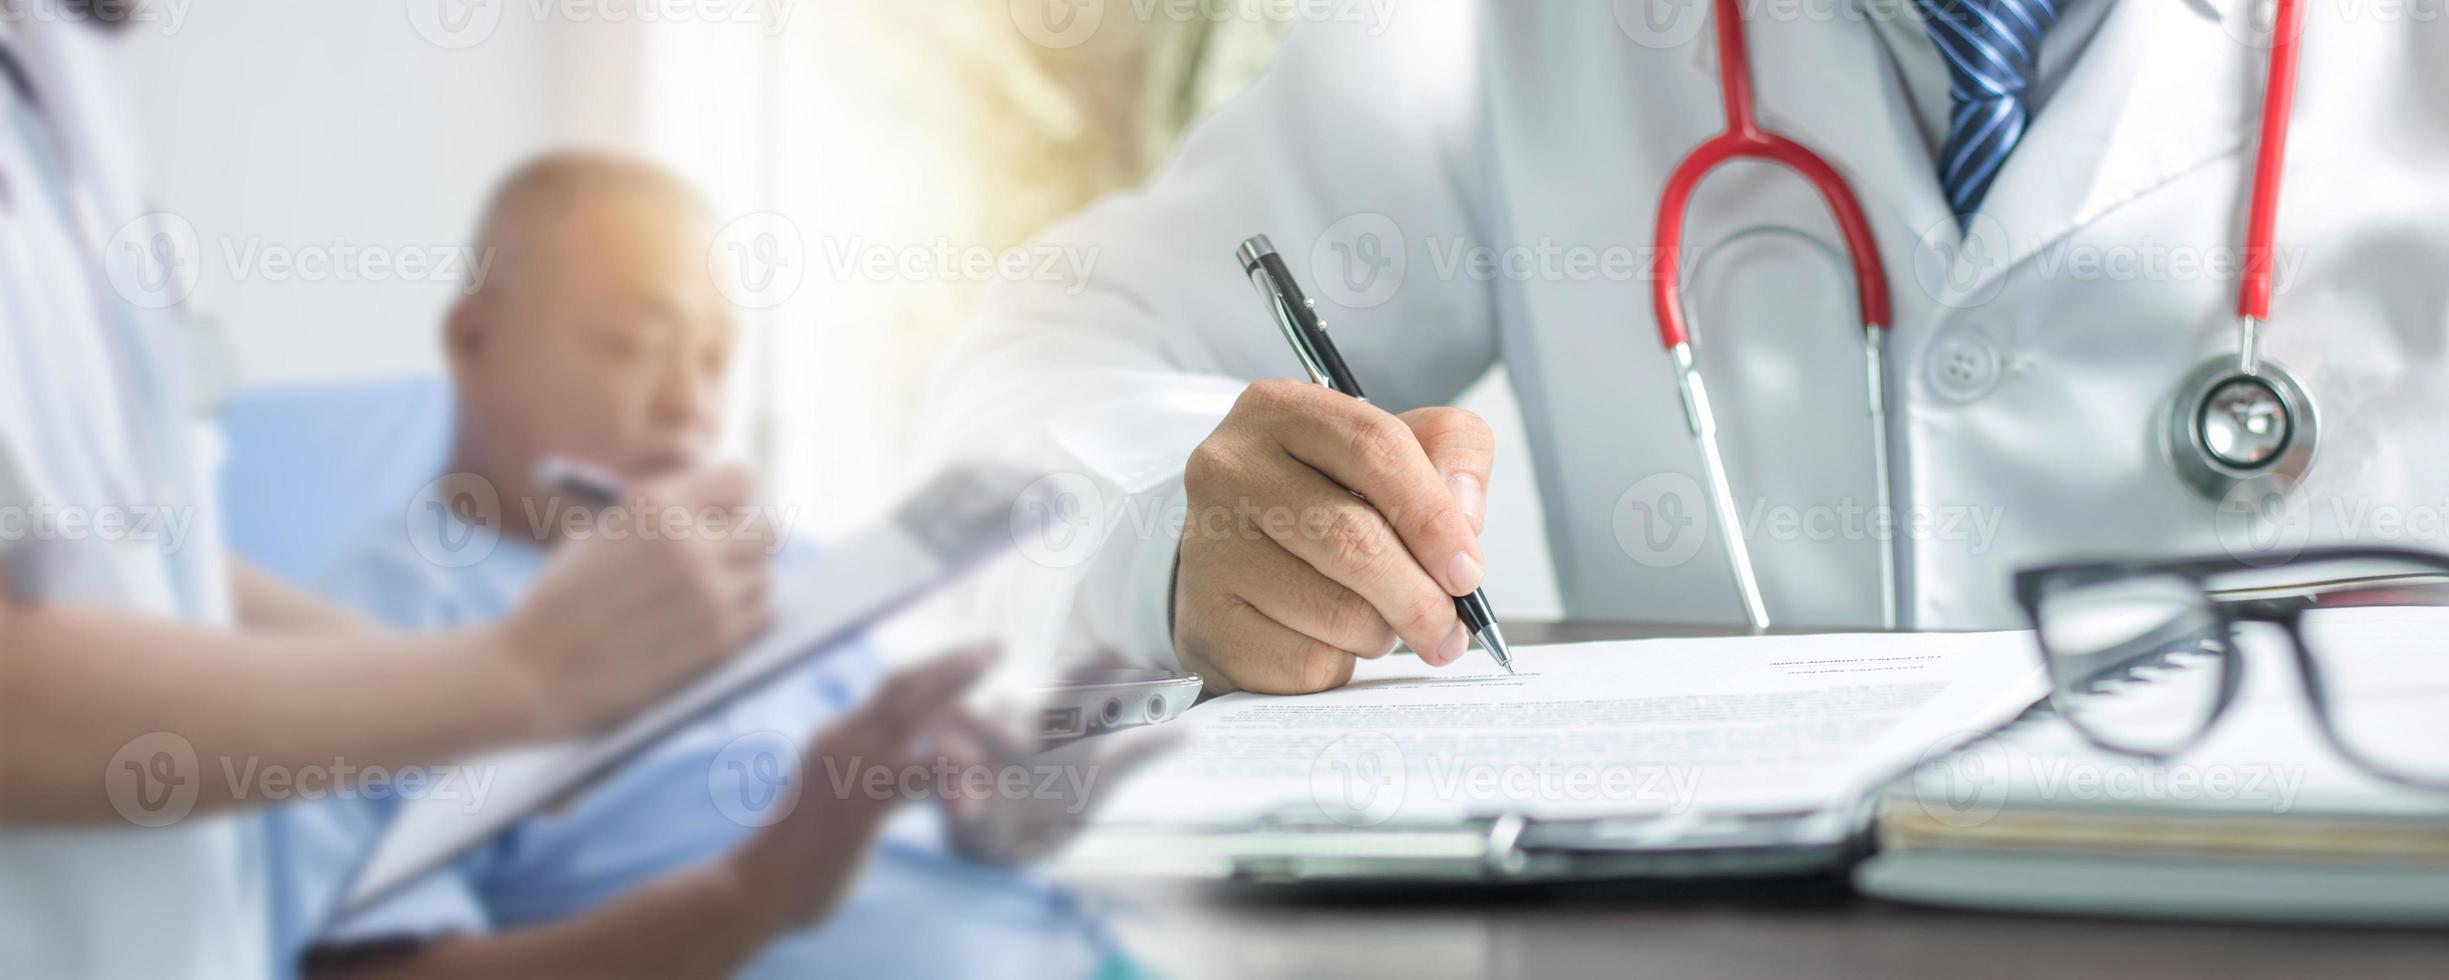 gros plan sur la main du médecin écrivant et remplissant du papier pour le traitement après vérification et histoire de parler avec le patient photo